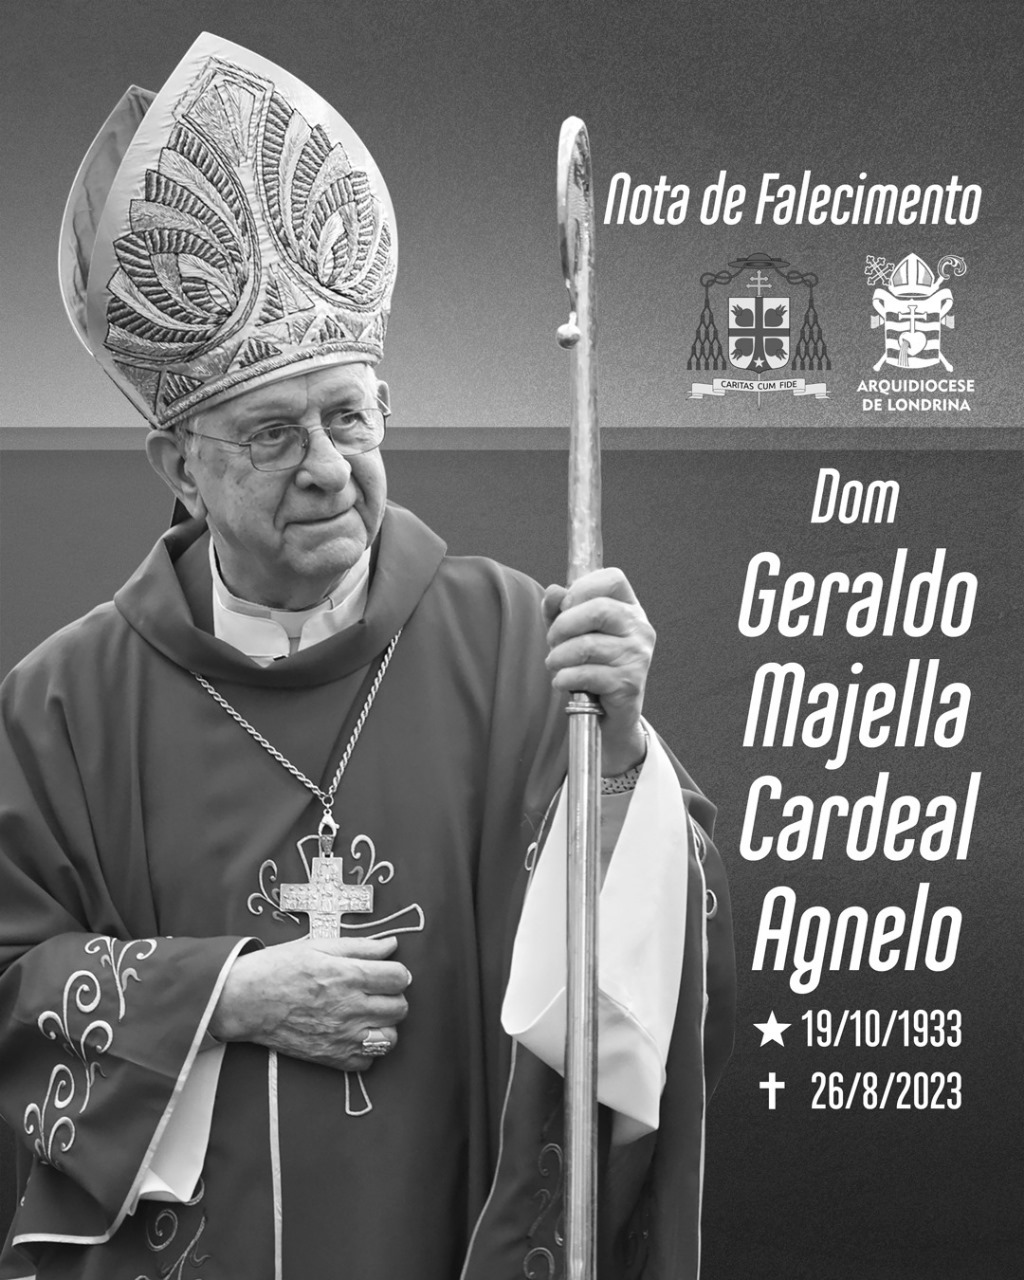 Nota de falecimento: Cardeal Geraldo Majella Agnelo